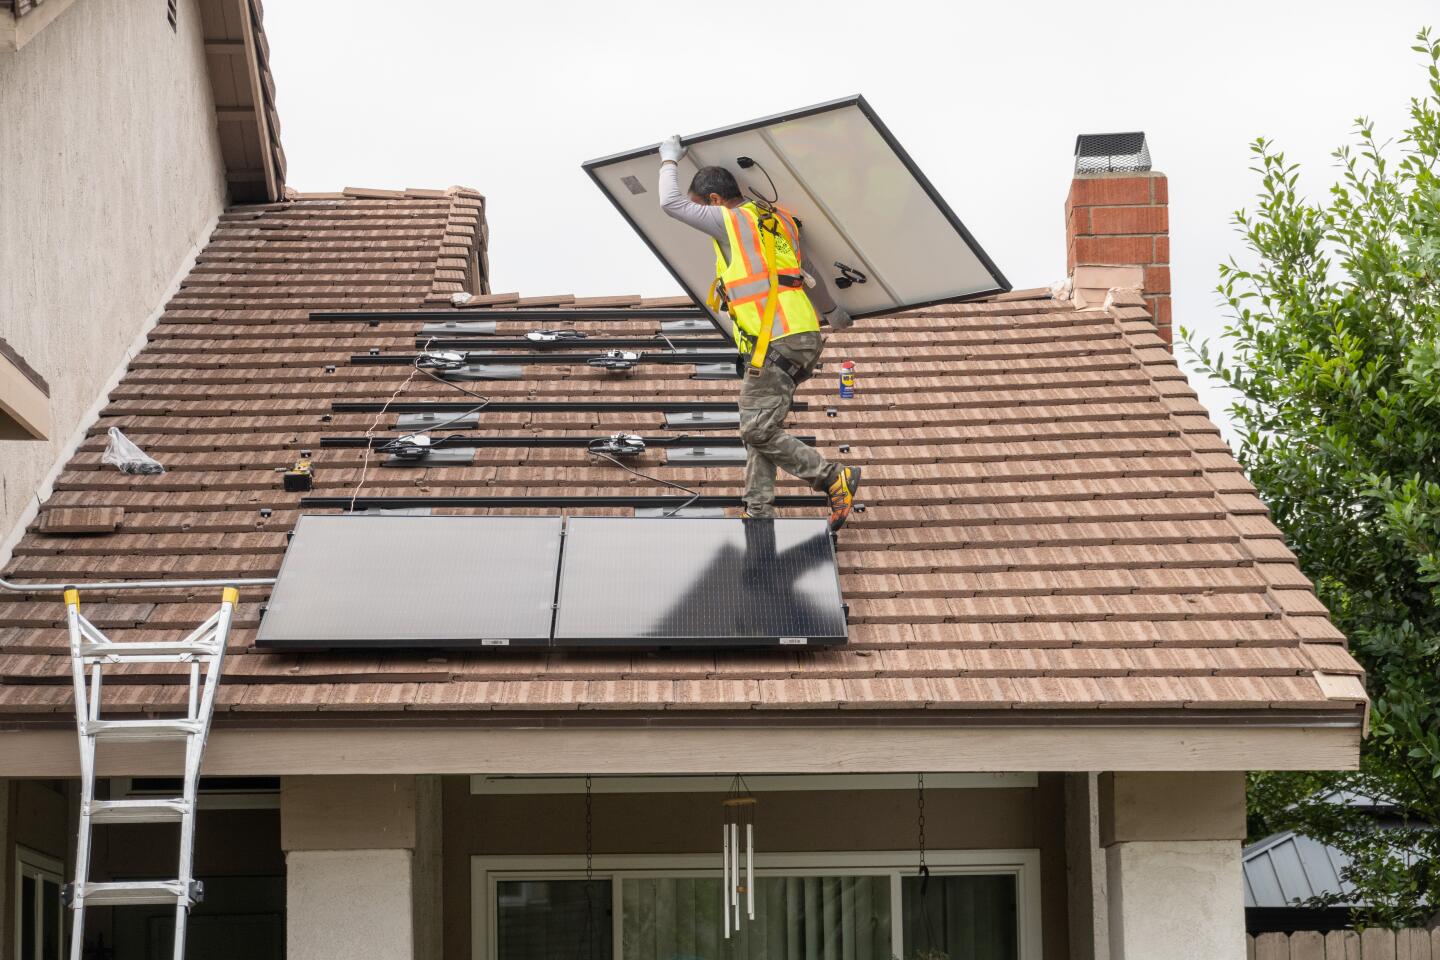 1307675-me-rooftop-solar-installation-08-mjc.jpg